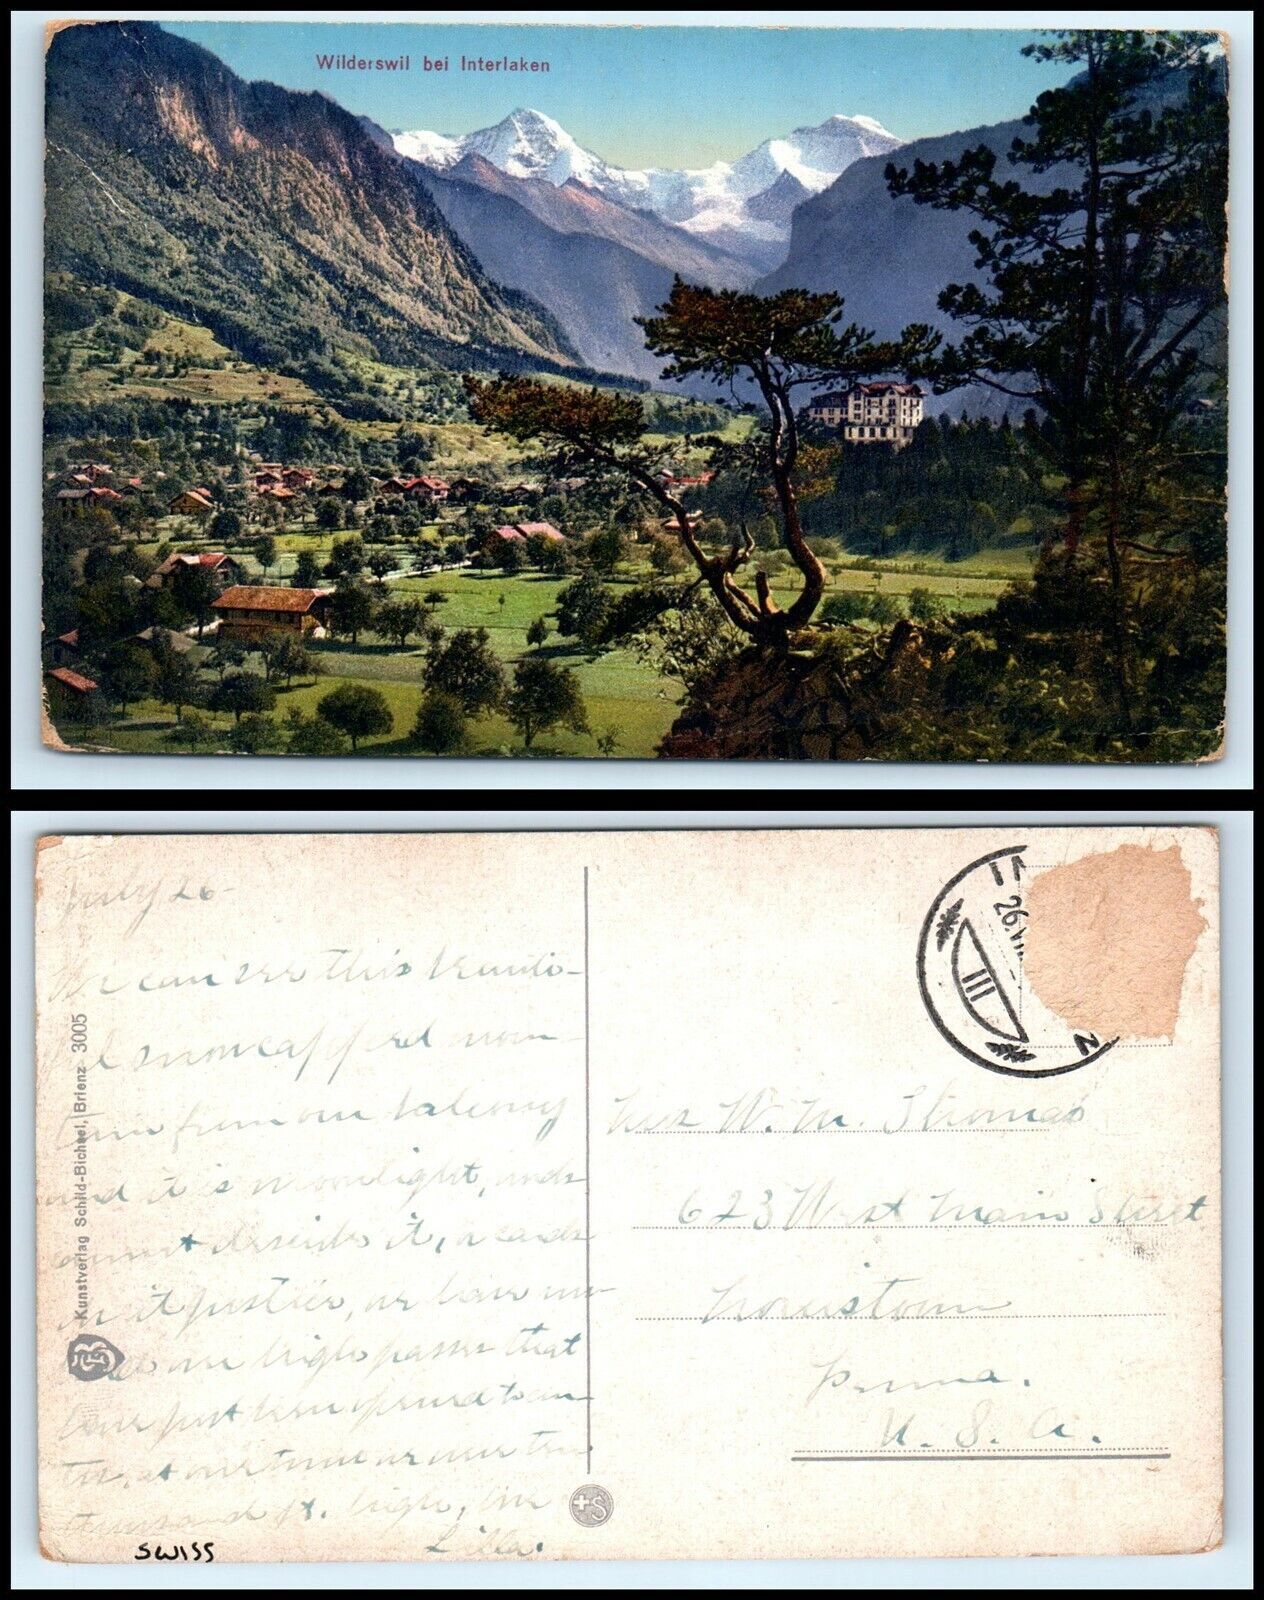 SWITZERLAND Postcard - Wilderswil bei Interlaken FZ17